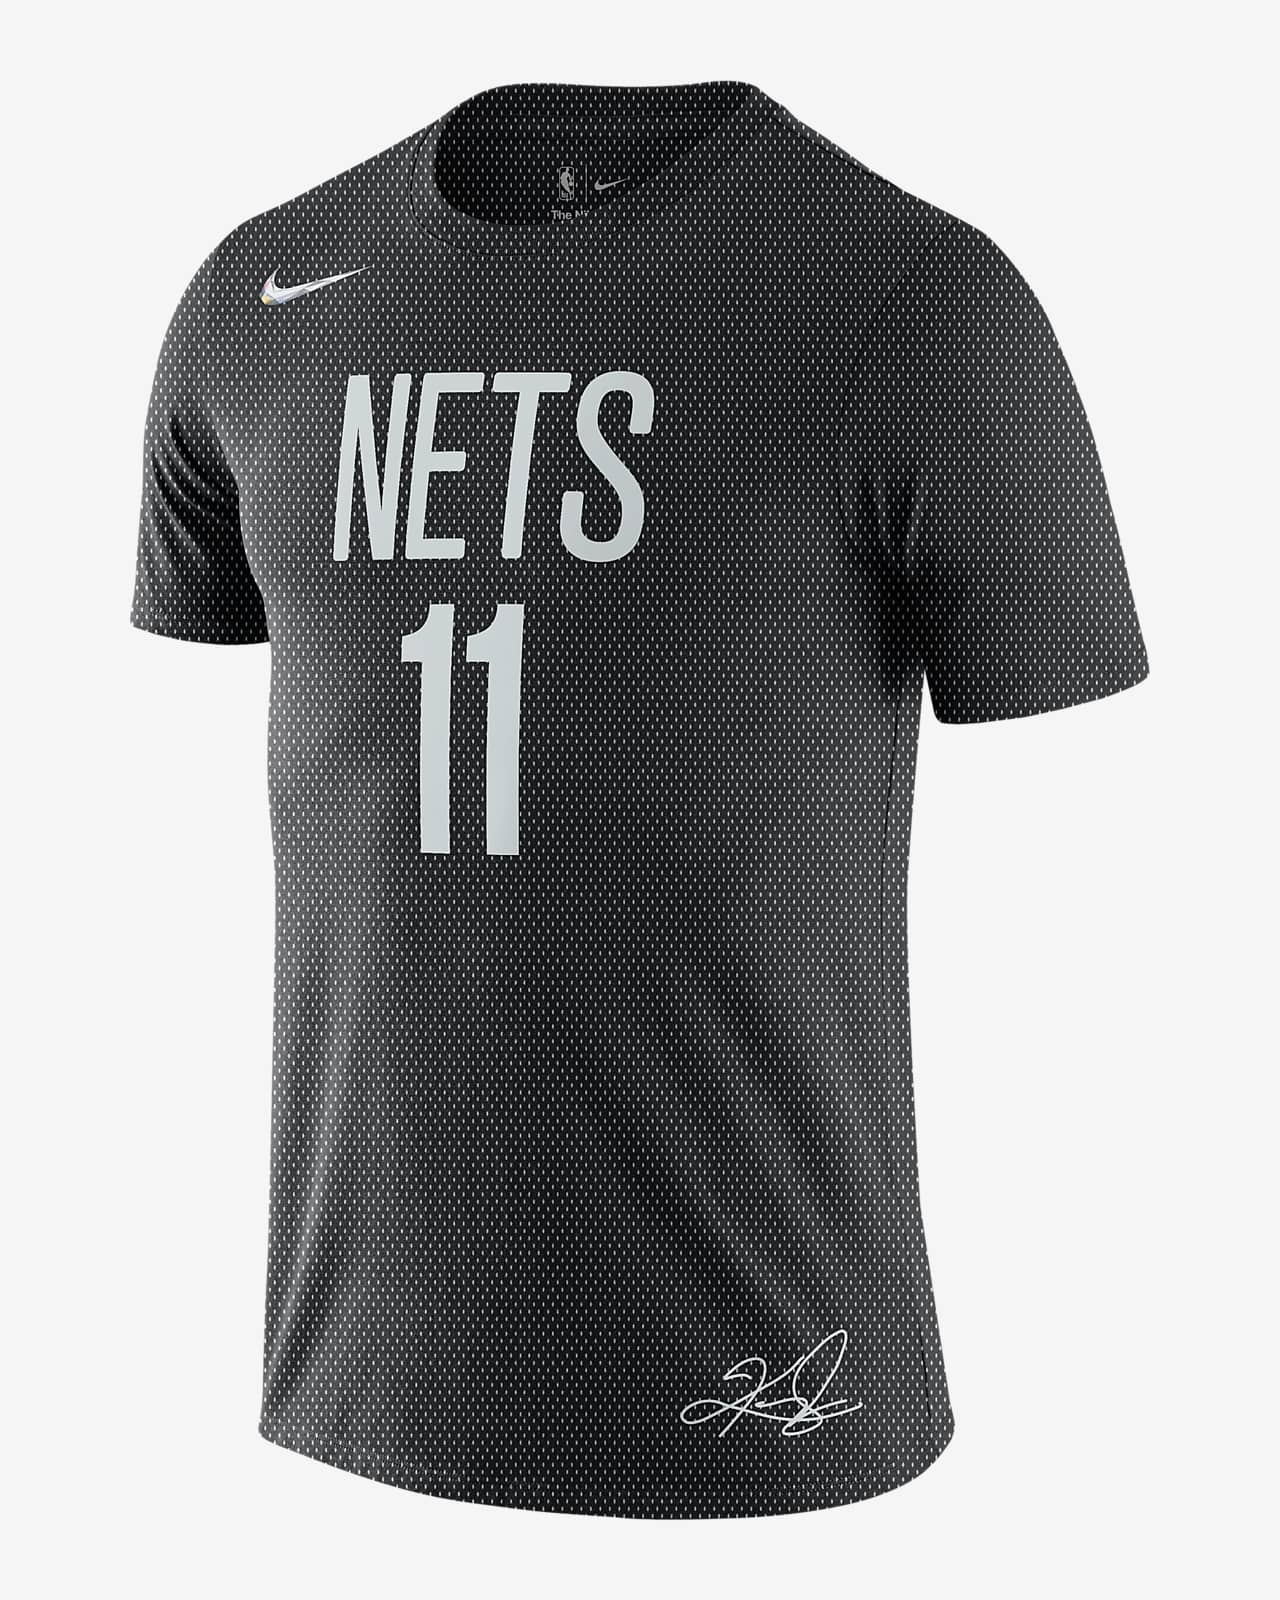 カイリー アービング ネッツ メンズ ナイキ NBA Tシャツ